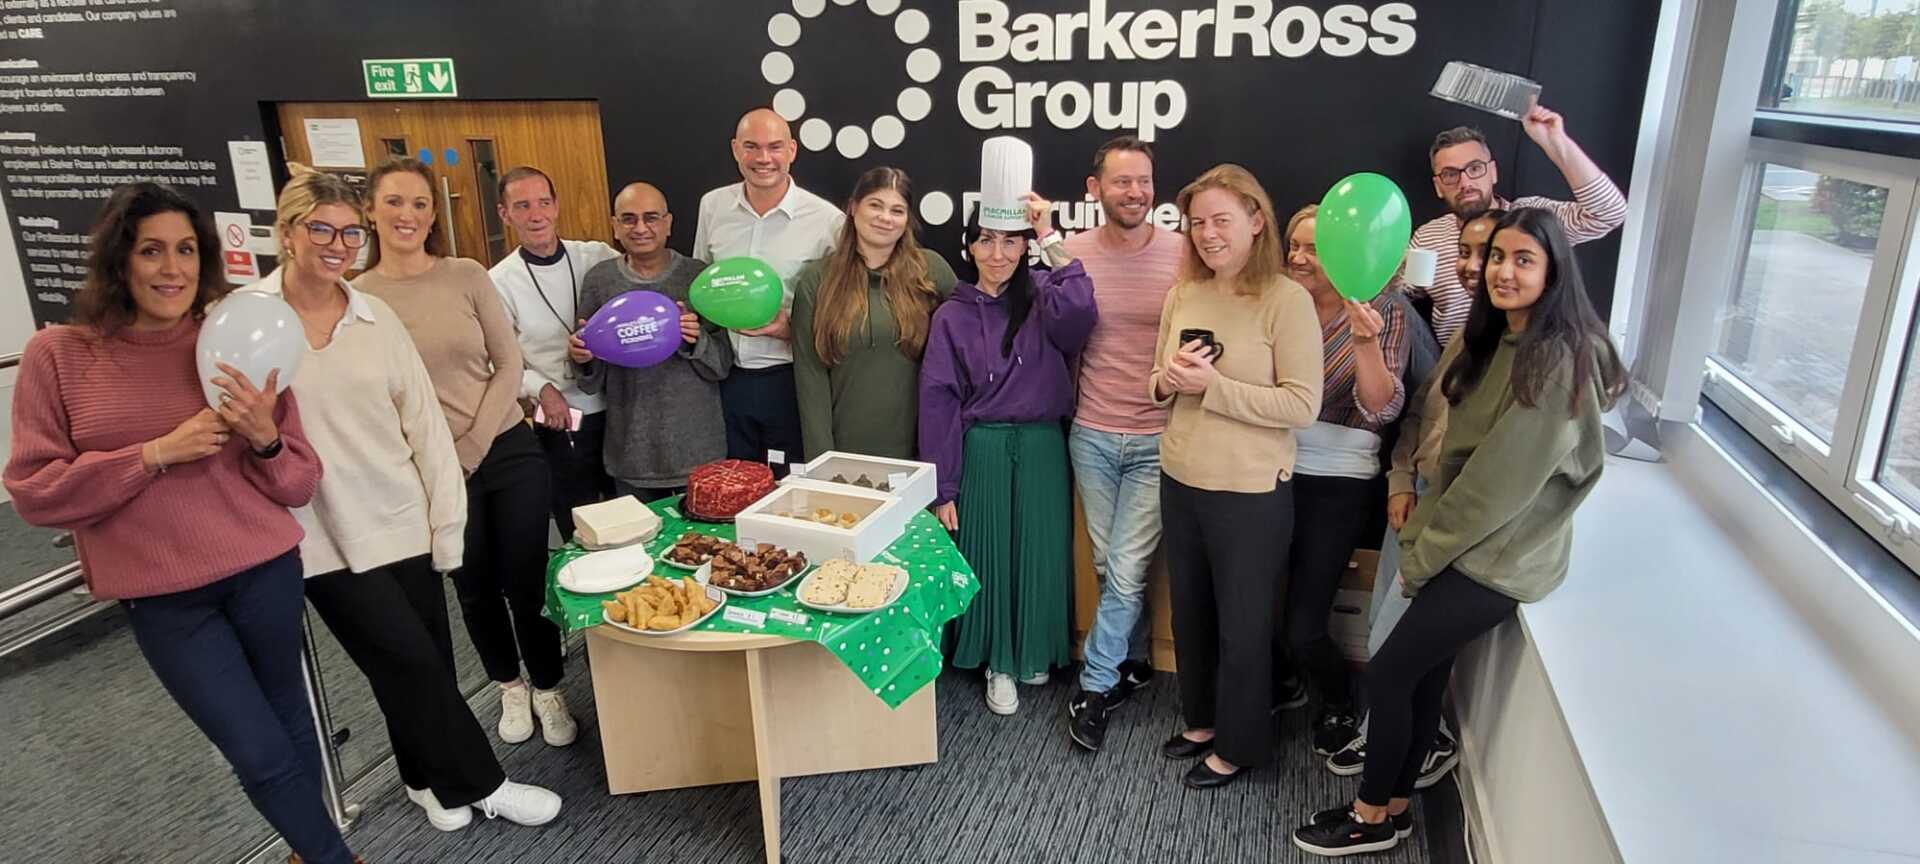 Barker Ross Employees Celebrating